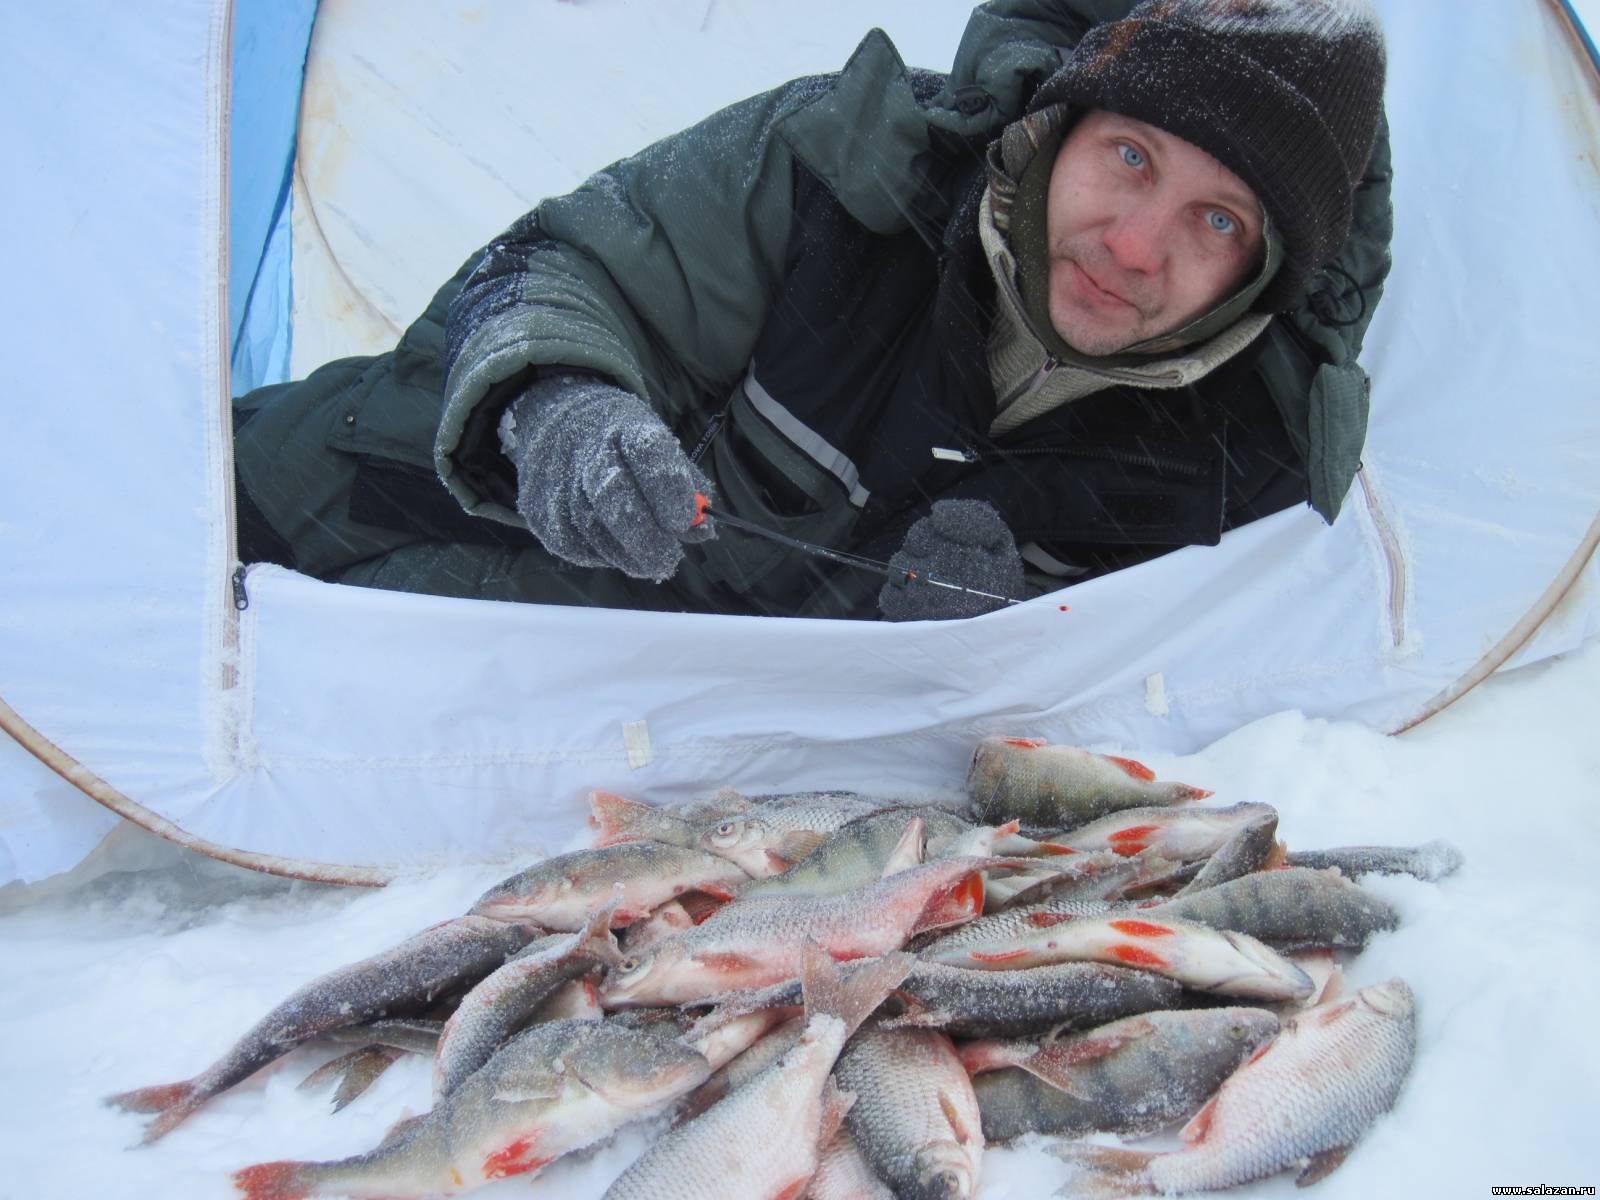 Как сделать безопасную печку для зимней рыбалки своими руками?! Делается быстро - греет отлично!